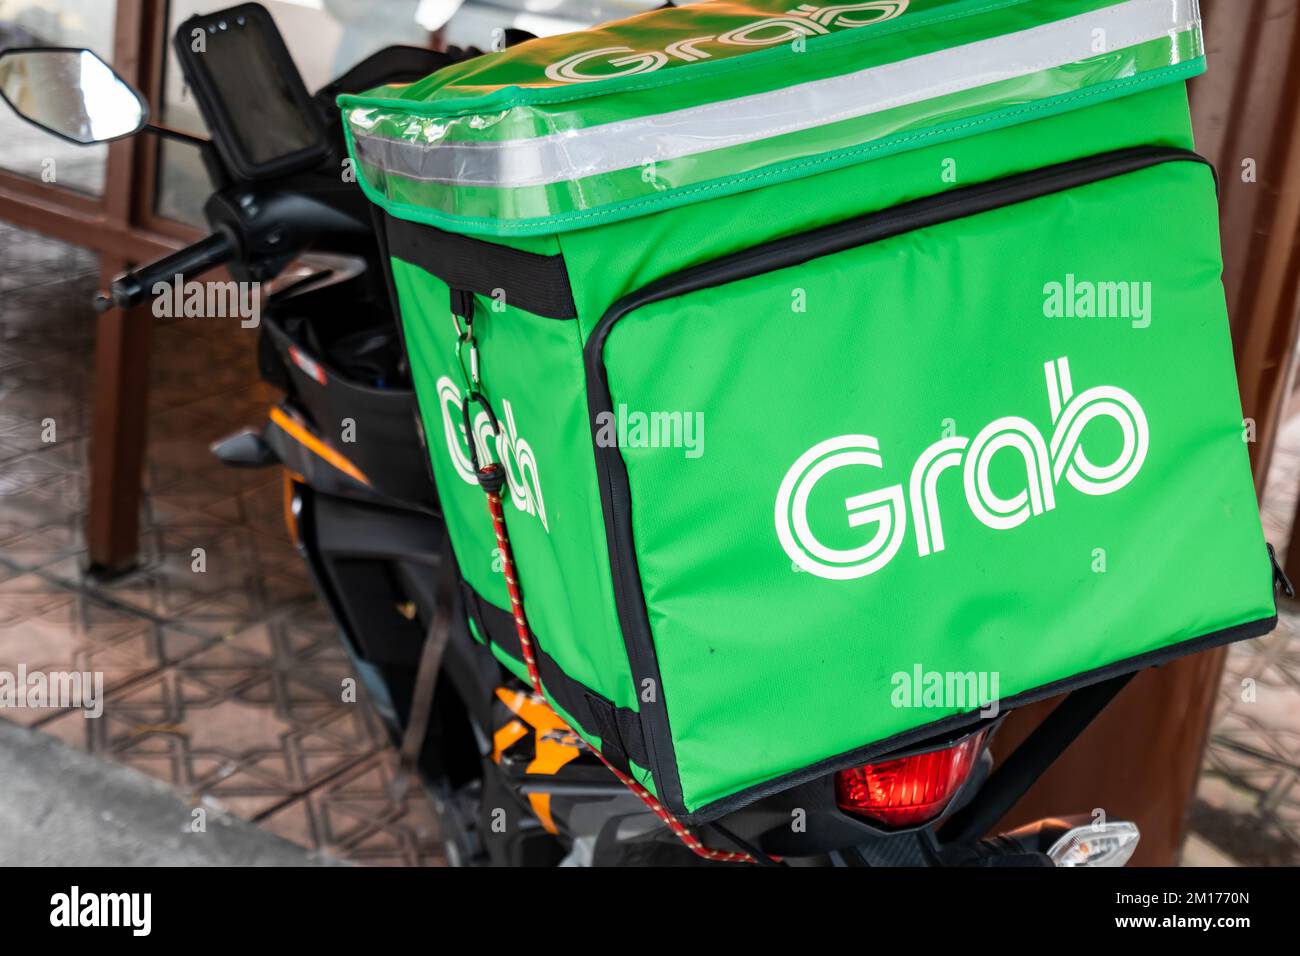 Décembre 2022: Kuala Lumpur, Malaisie - moto de capture pour la nourriture de capture. Grab est une super application qui fournit le transport, la livraison de nourriture, Banque D'Images